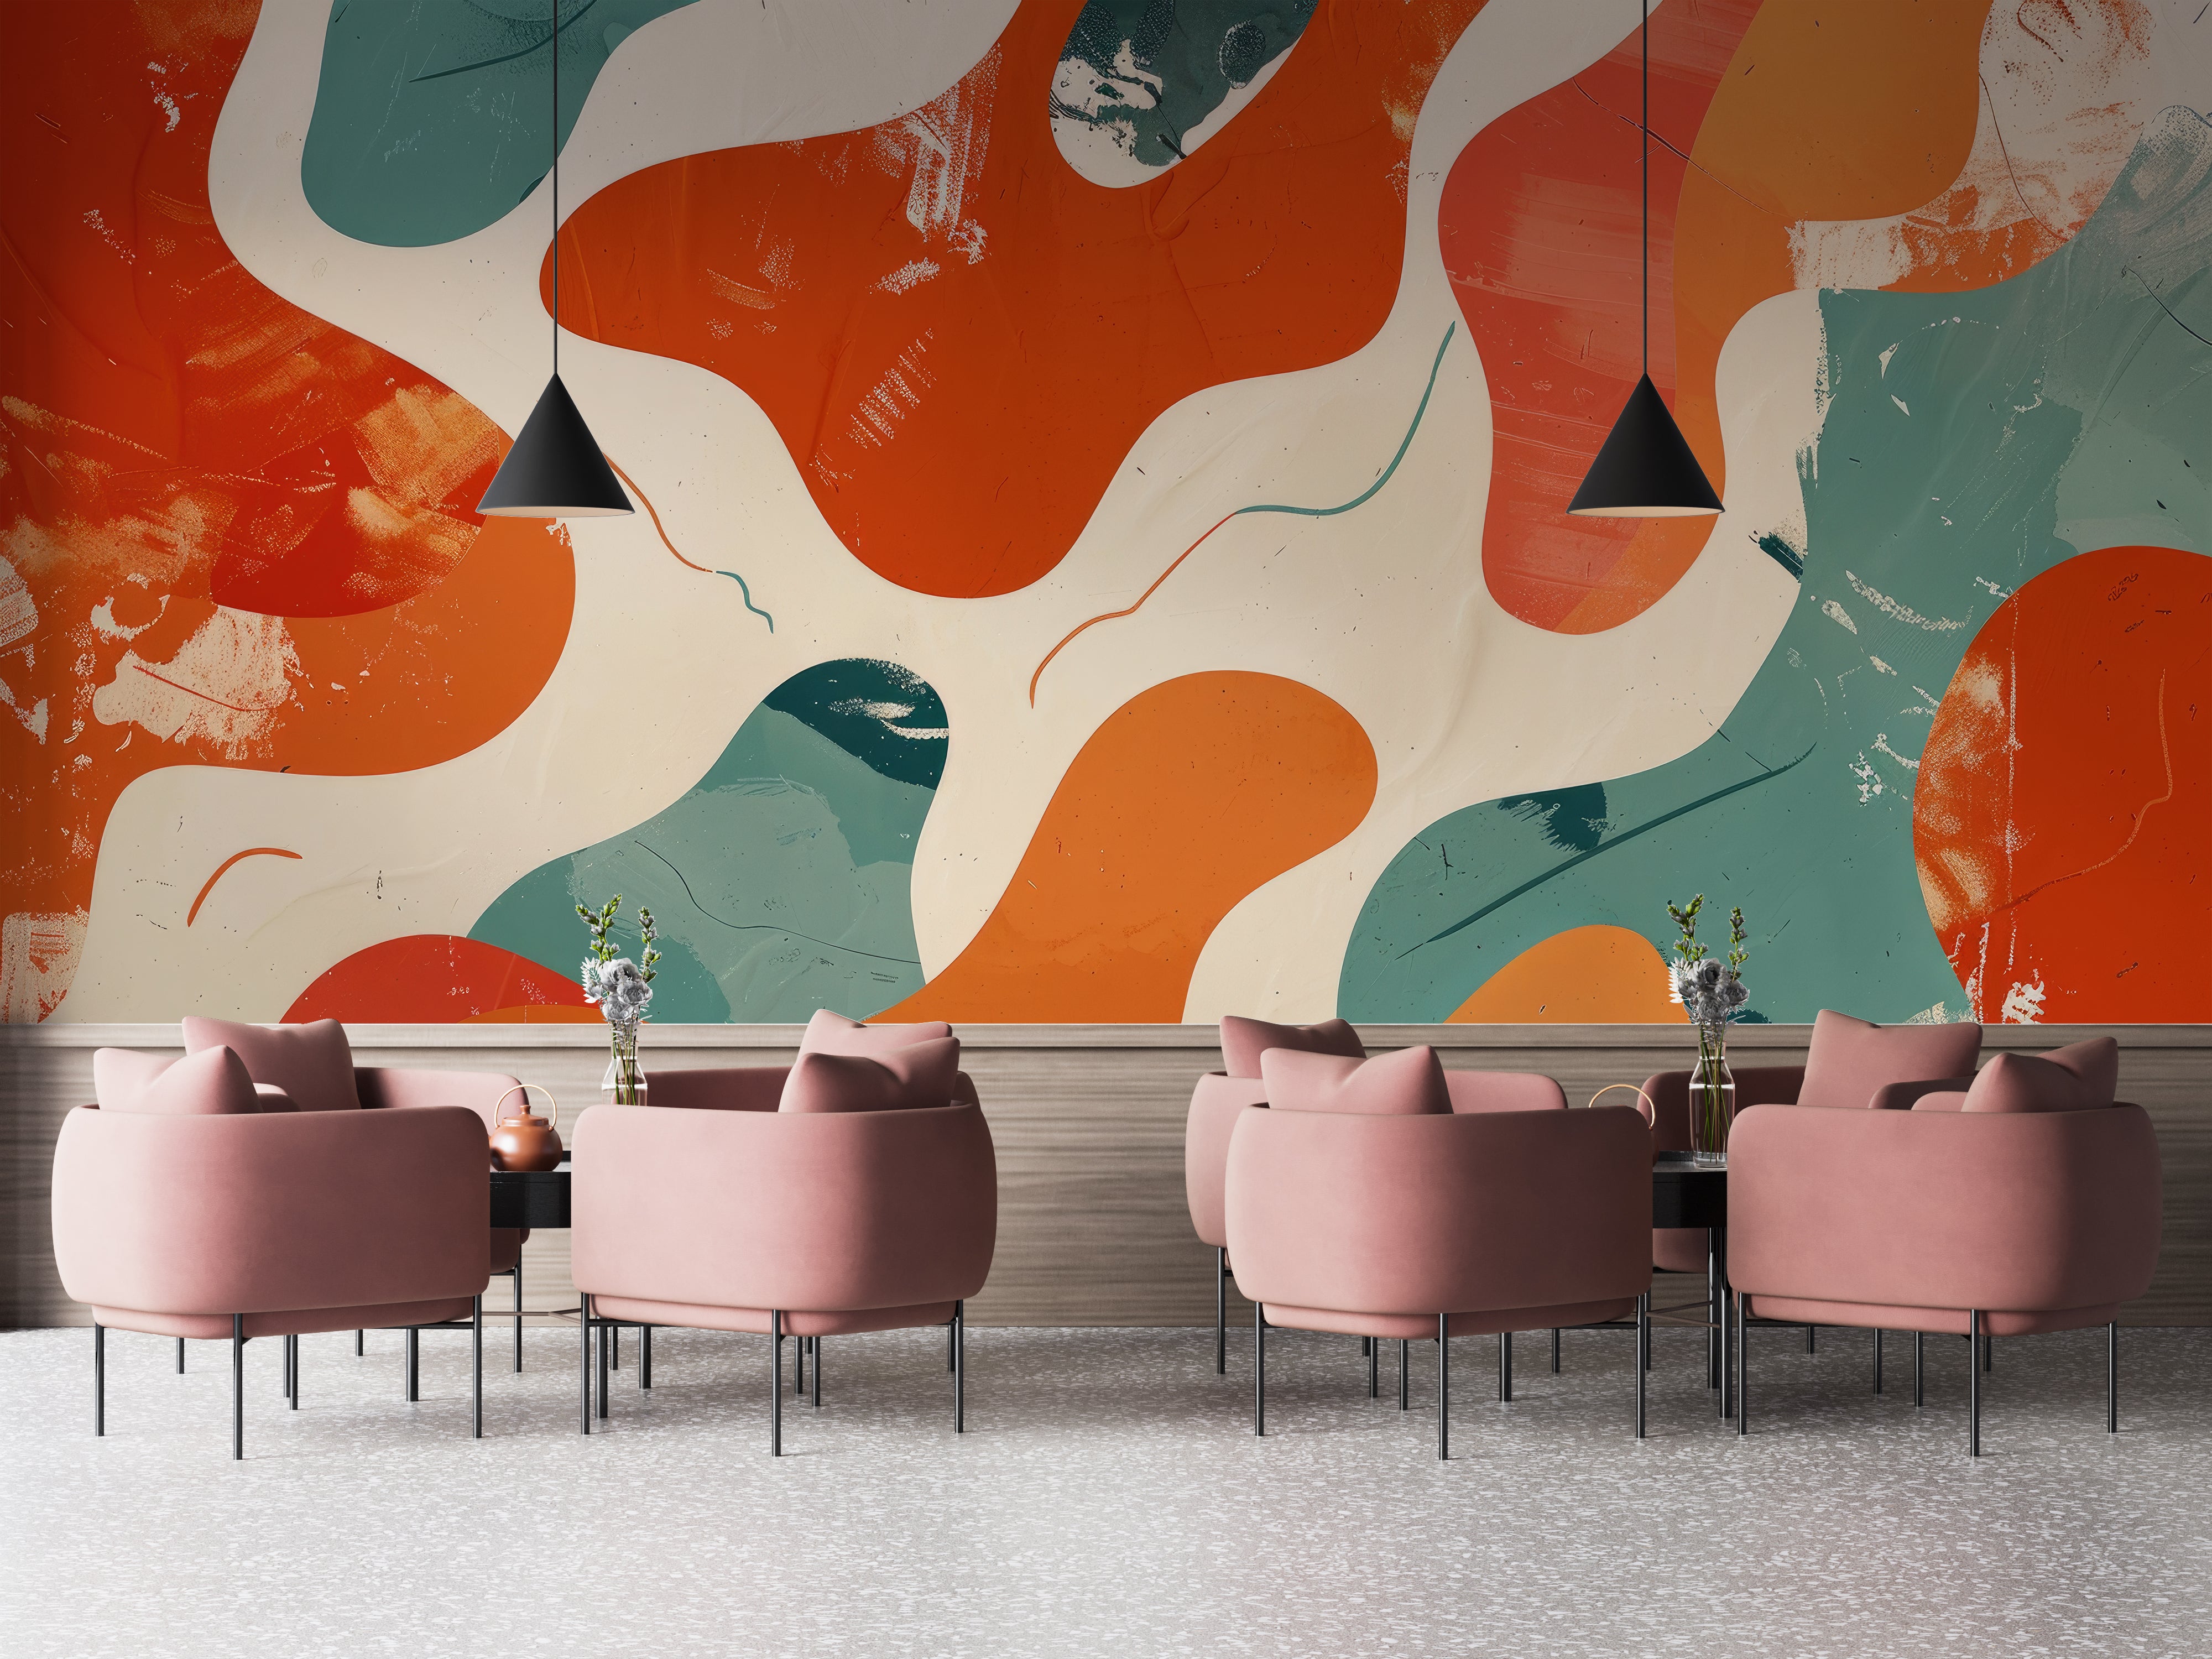 Modern Ripples - Panoramic Wallpaper in Intense Colors